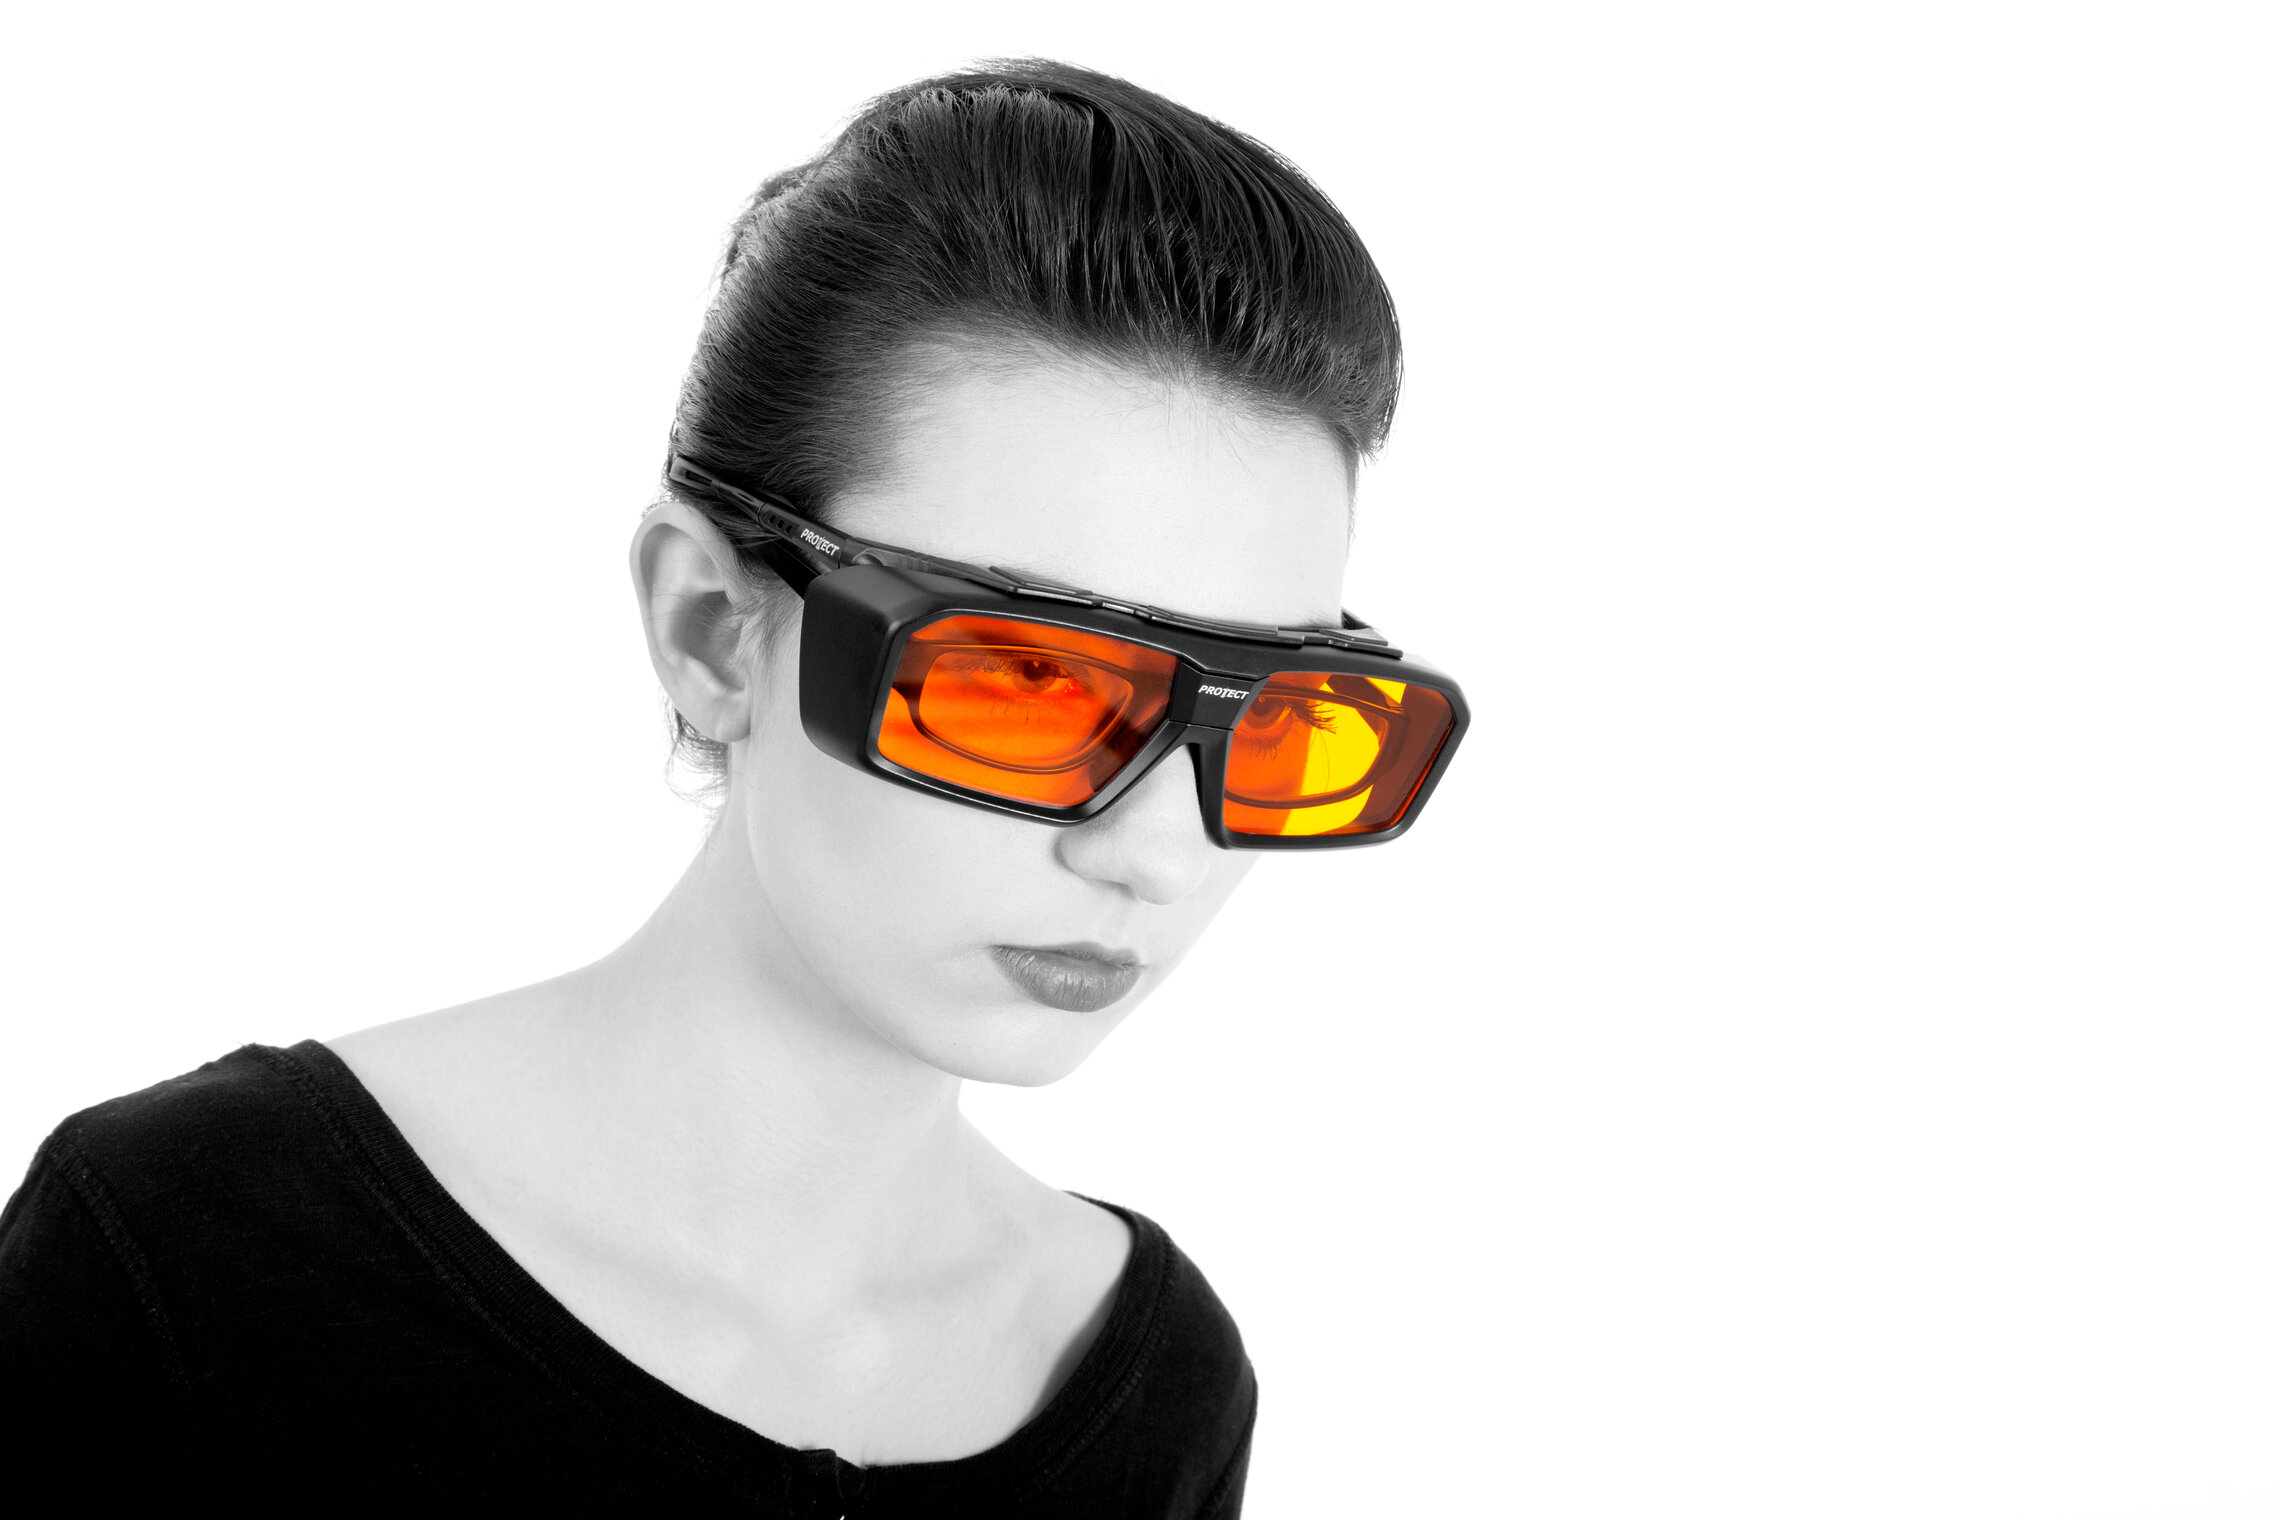 Laser safety glasses